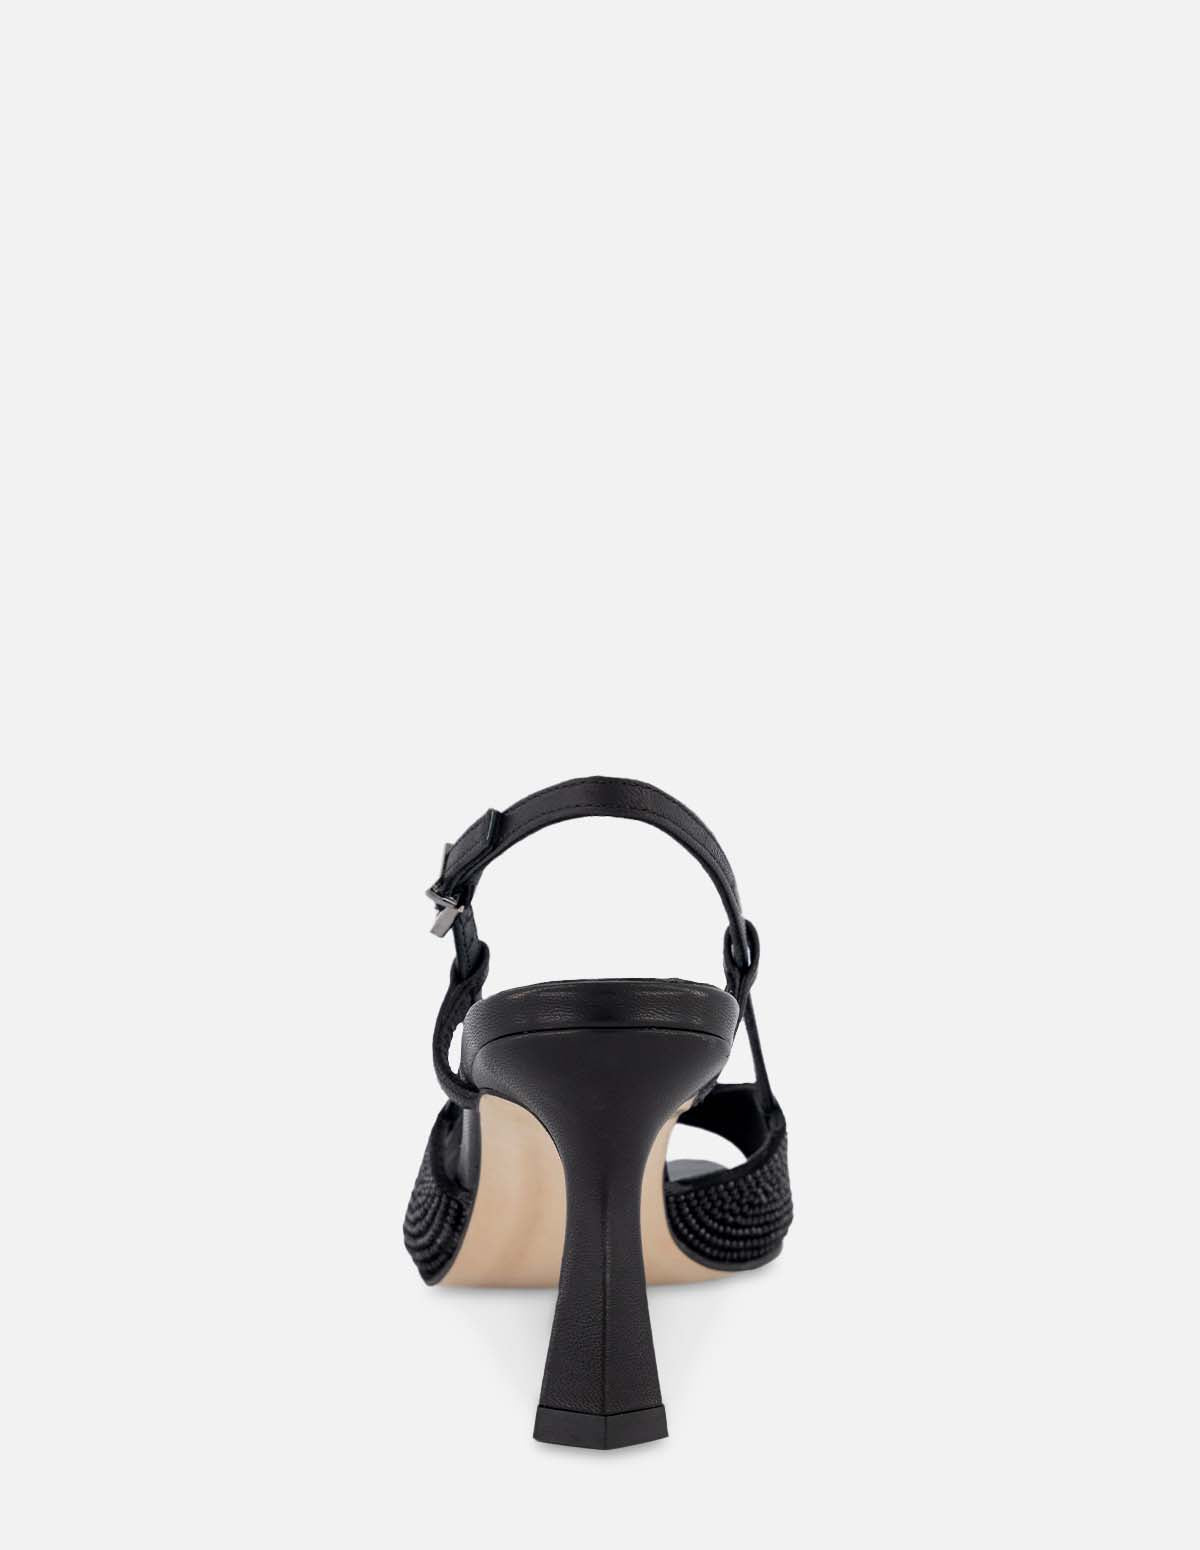 Sandalia de tacón medio con pedrería en color negro para mujer